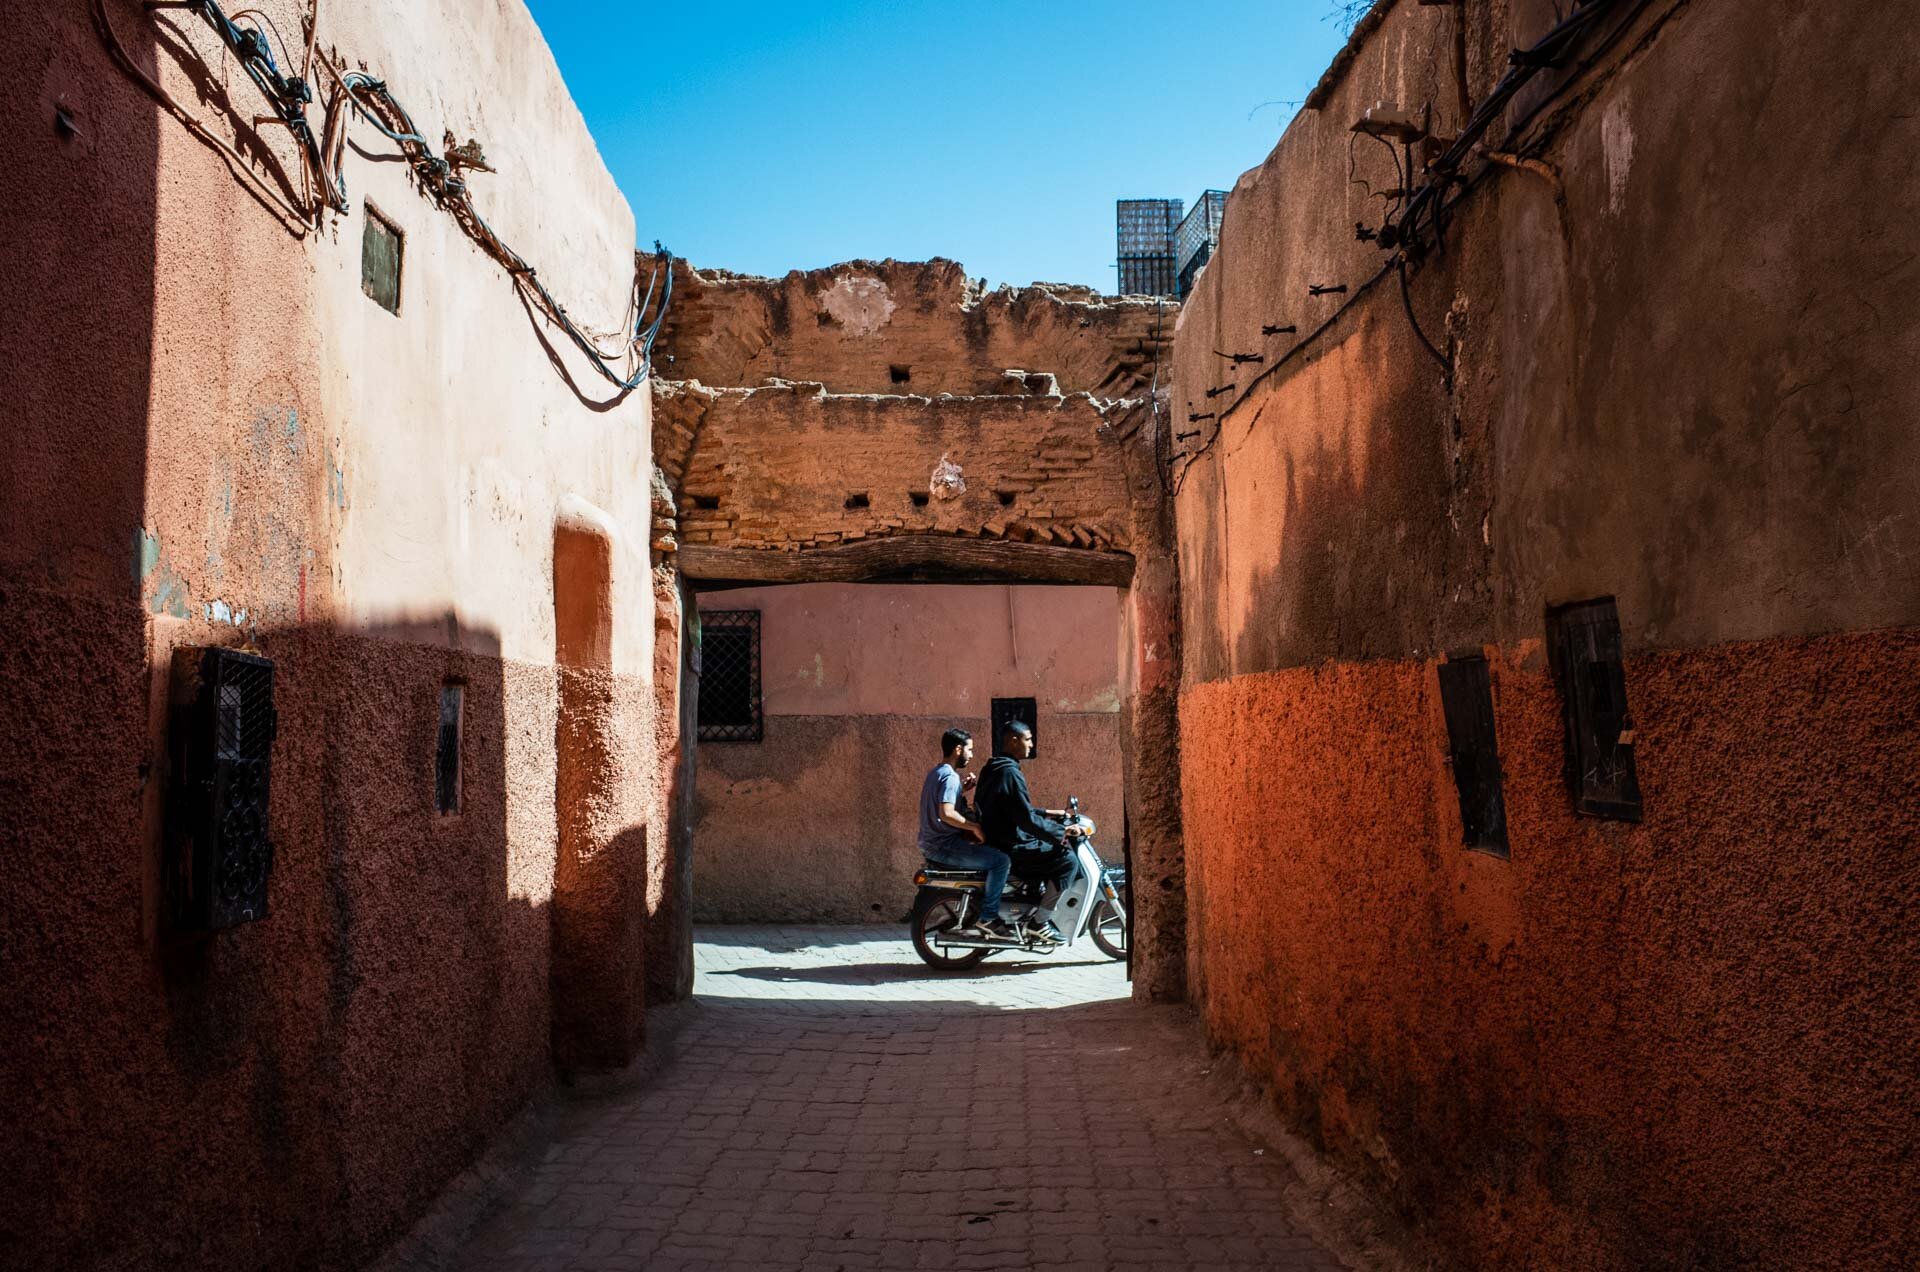 Marocco, marocco on the road, viaggio in marocco, marrakech, medina, bazar, viaggio di coppia, viaggo in marocco itinerario, marrakech marocco, marrakech riad, marrakech hotel, marrakech cosa vedere, marrakech cosa fare-5.jpg